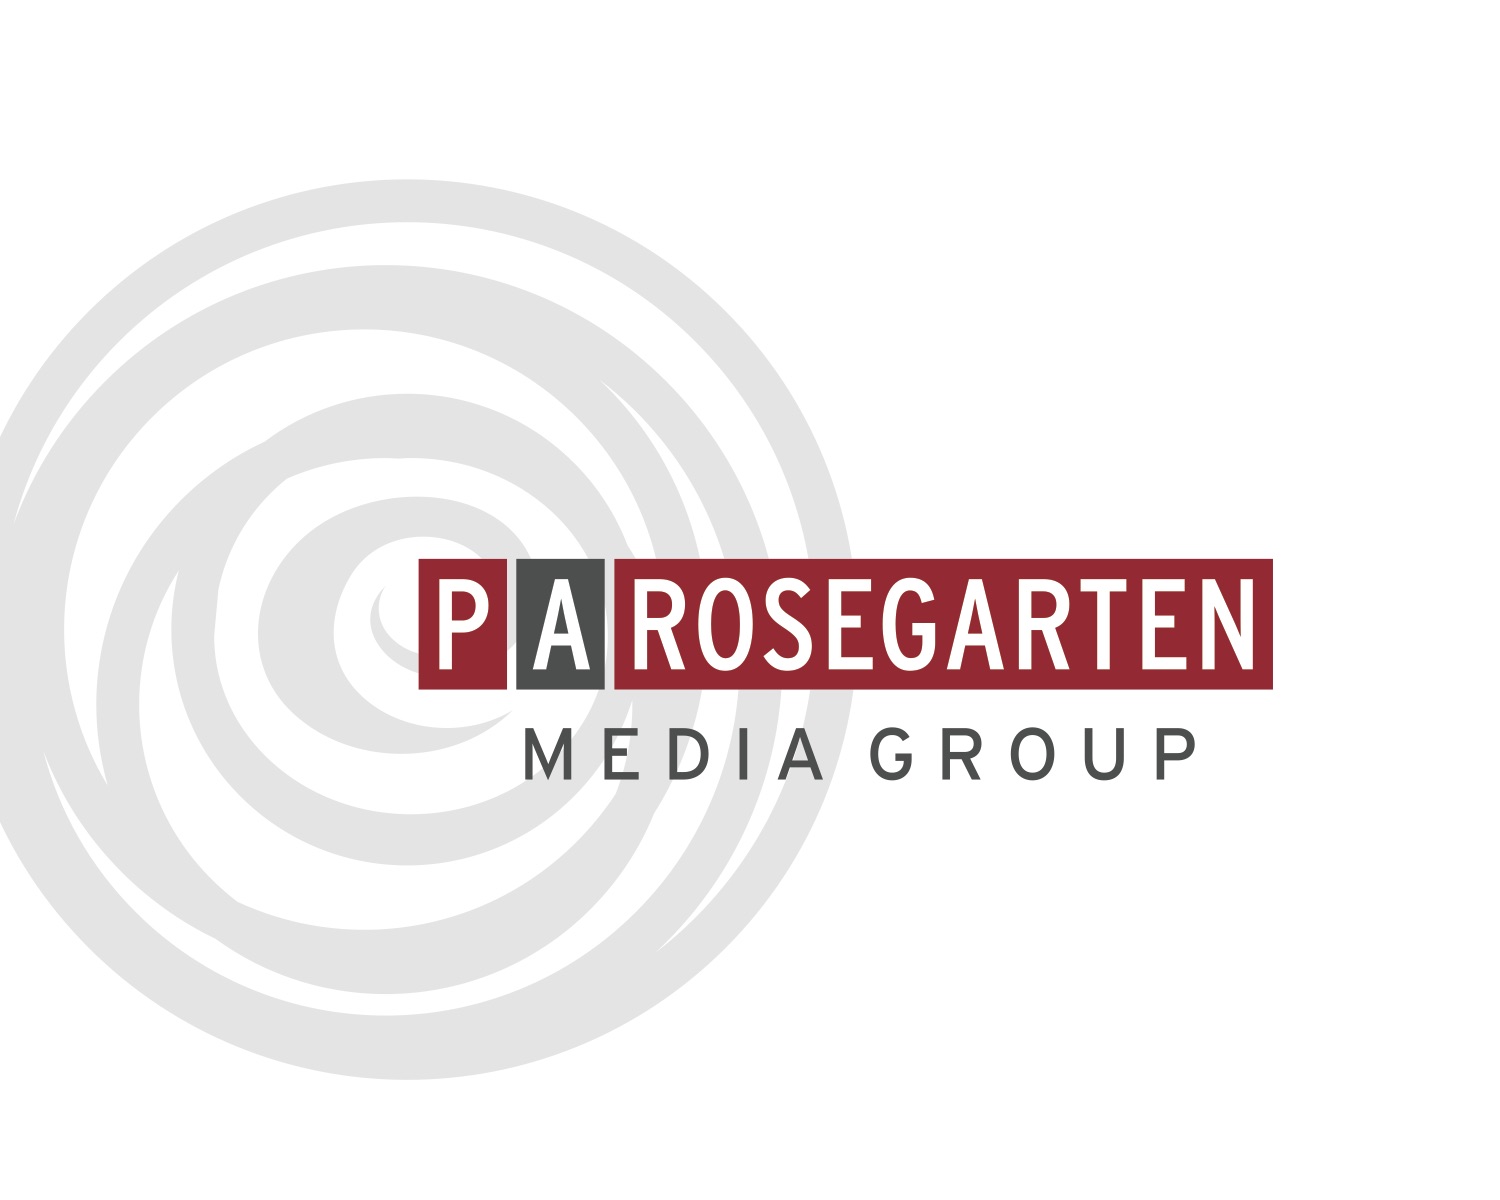 parosegarten media group